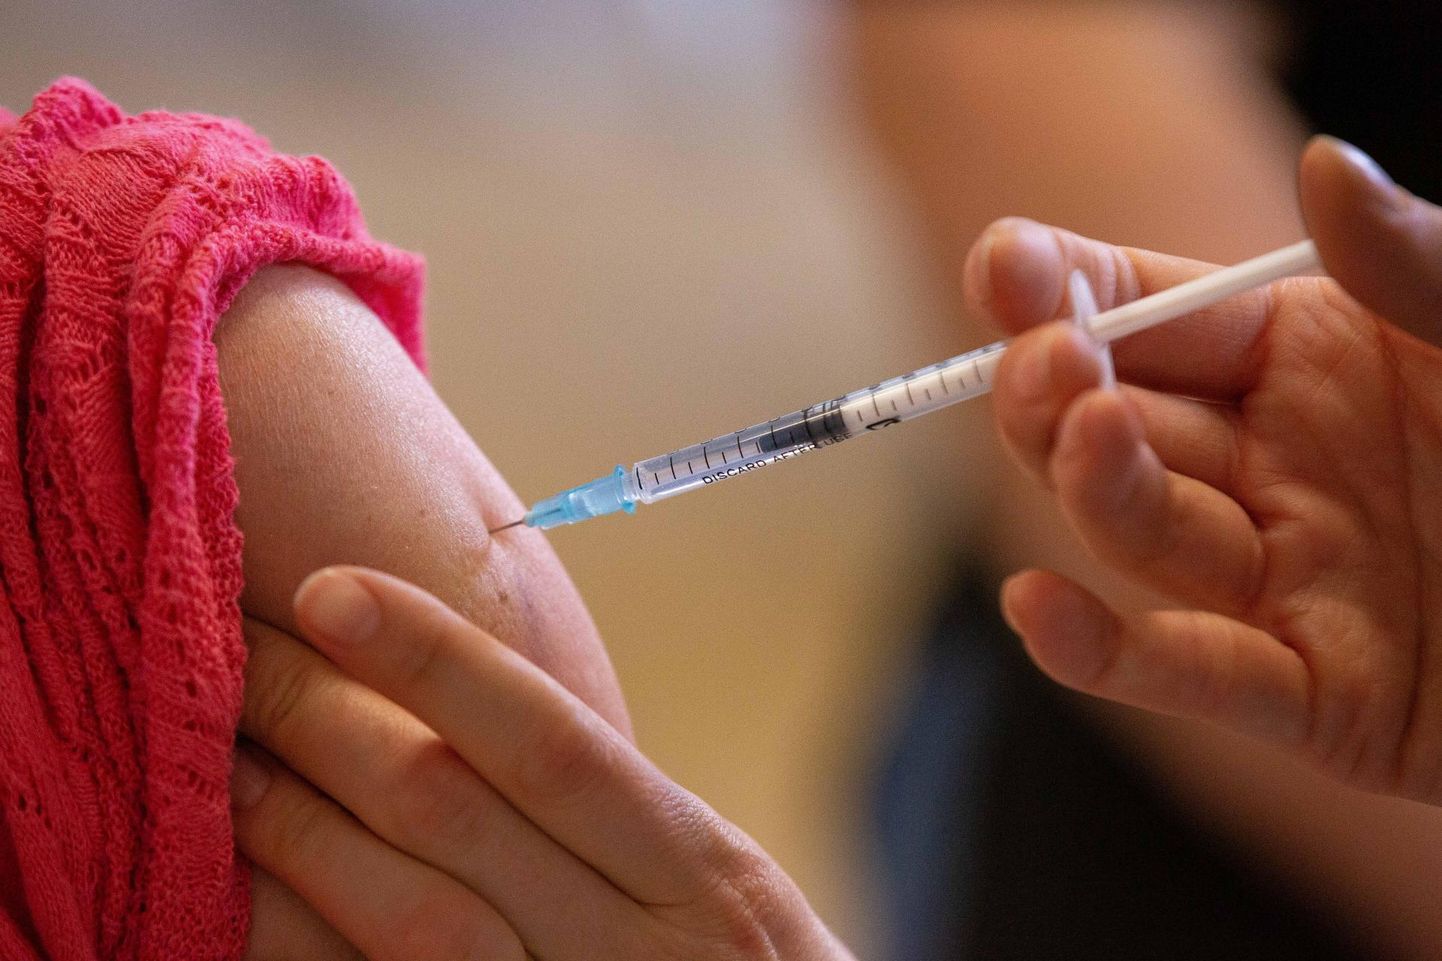 Ööpäeva jooksul manustati 13 482 vaktsiinidoosi, vaktsineerimisi on tehtud kokku 512 247 inimesele.